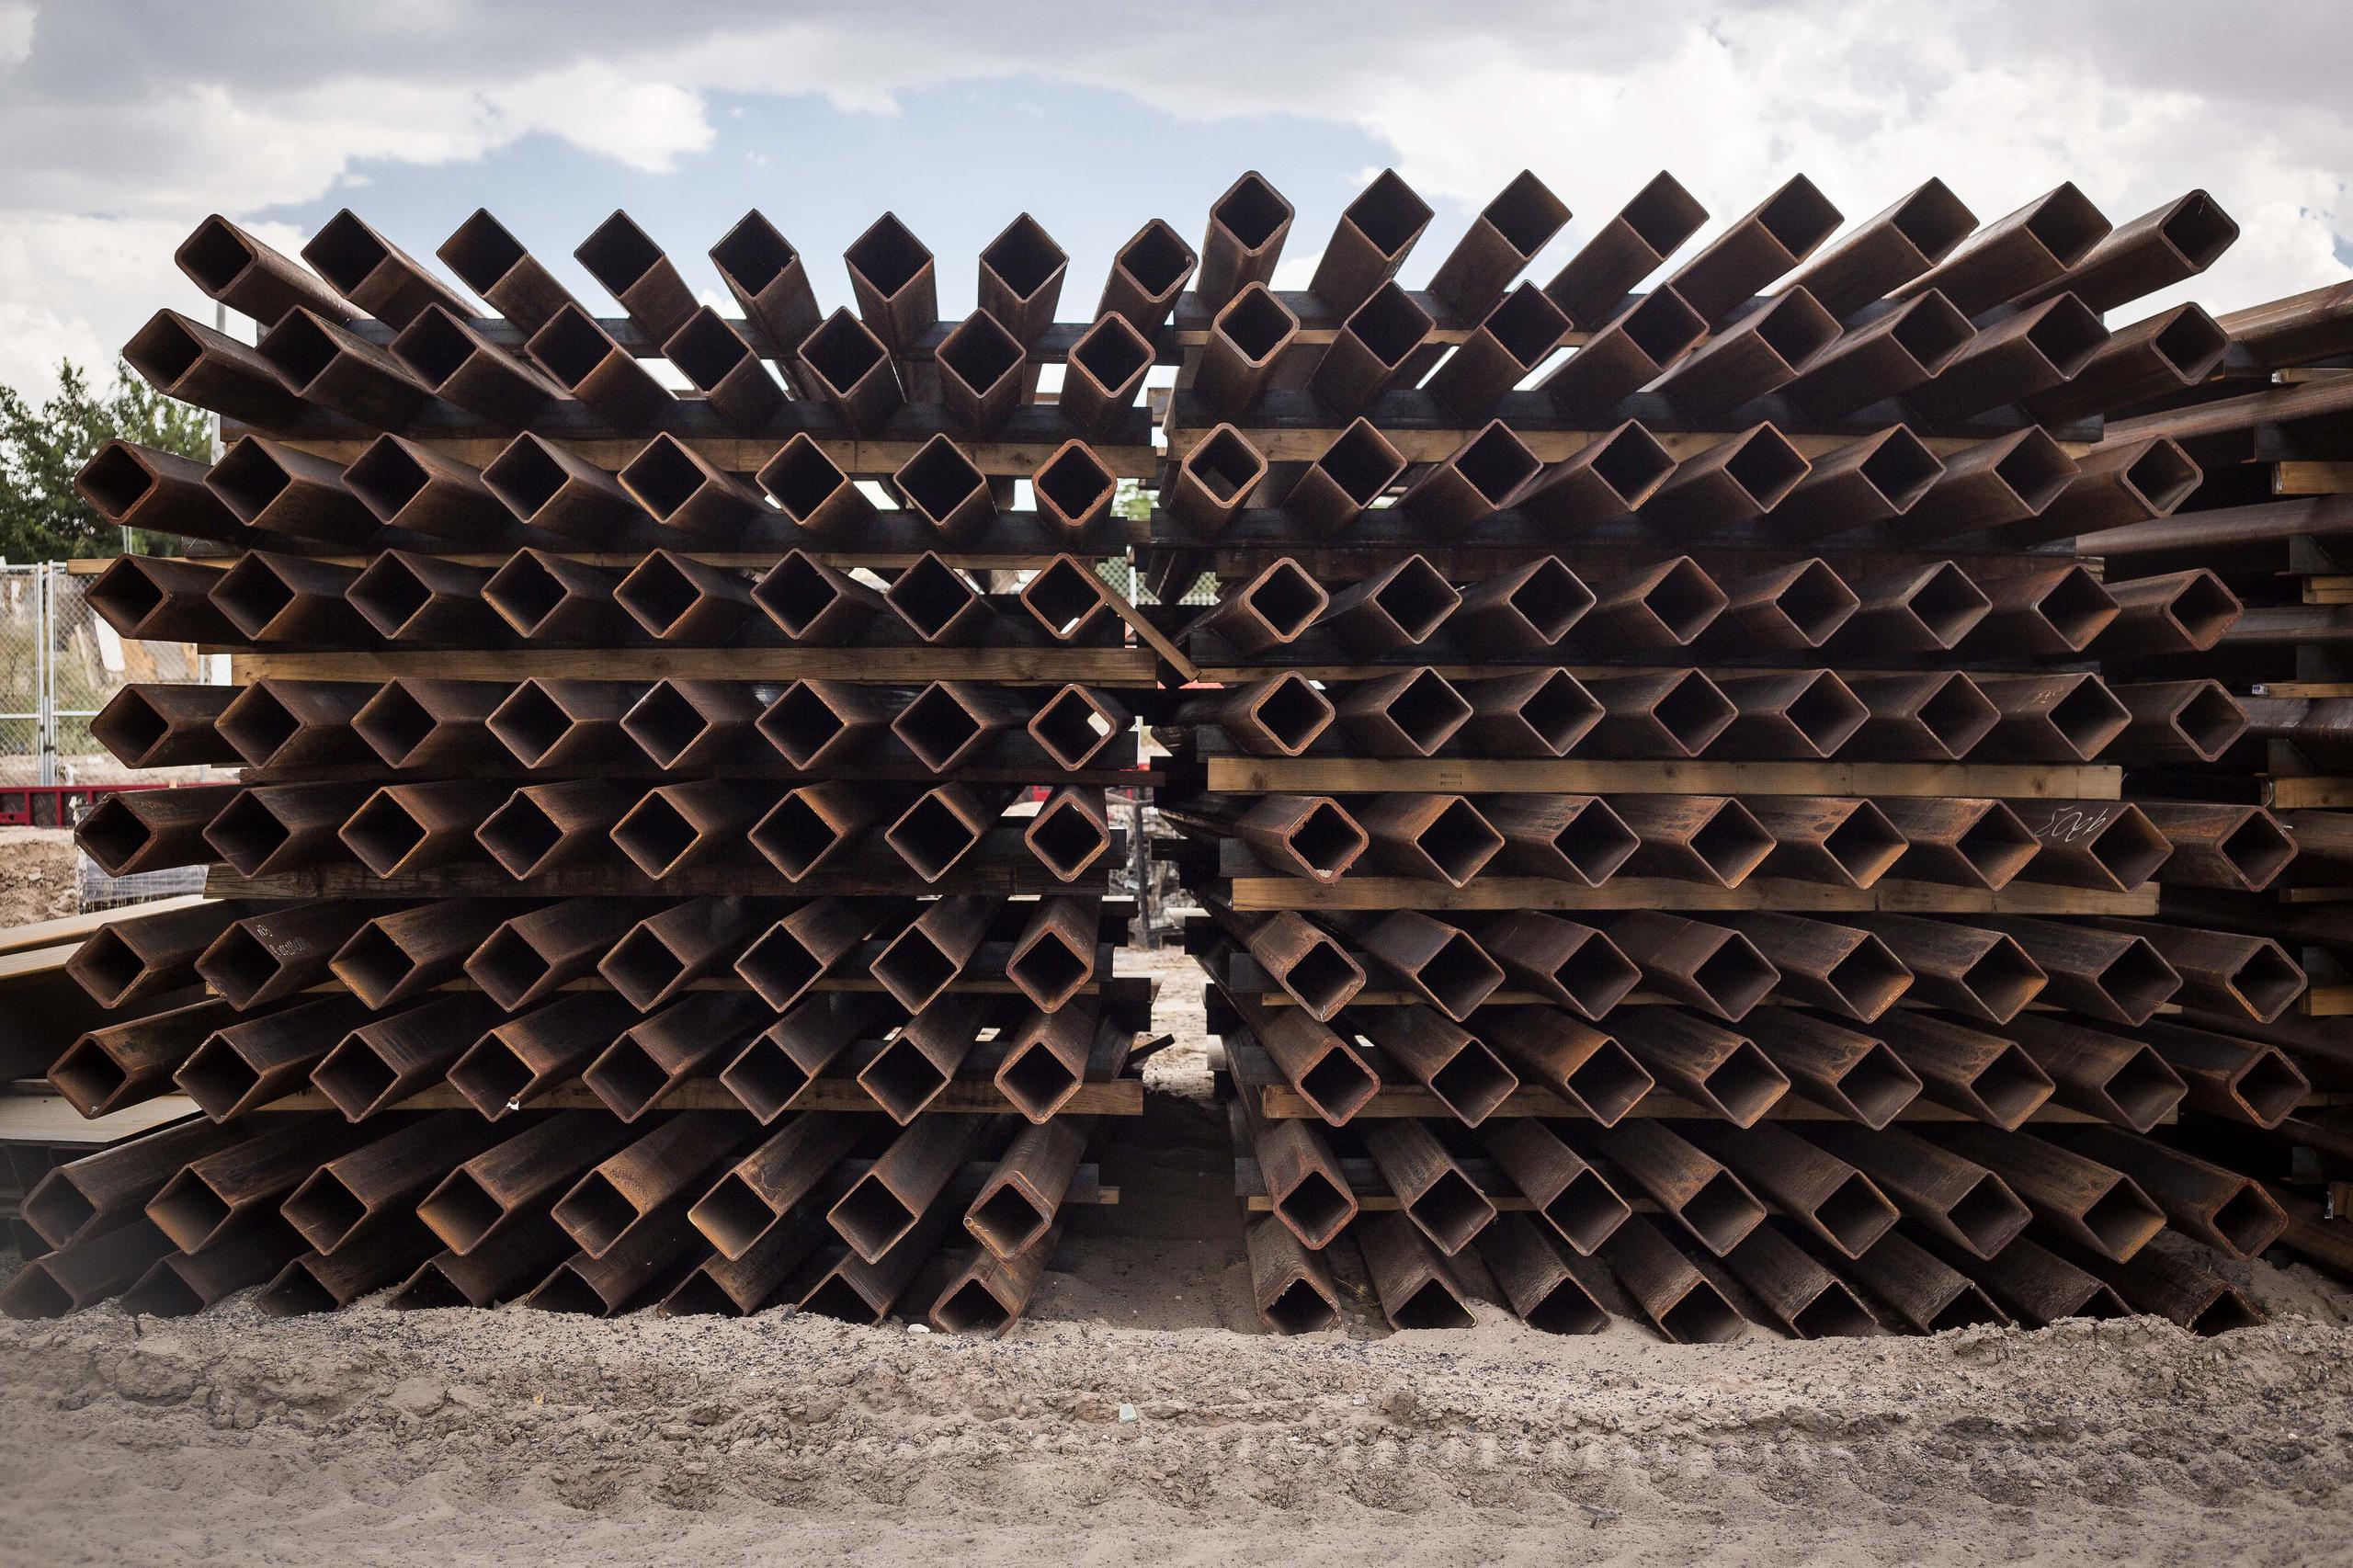 Decenas de vigas de acero esperan ser colocadas para reforzar el muro que levanta Estados Unidos en Nuevo México. EFE/Juan Labreche/Archivo